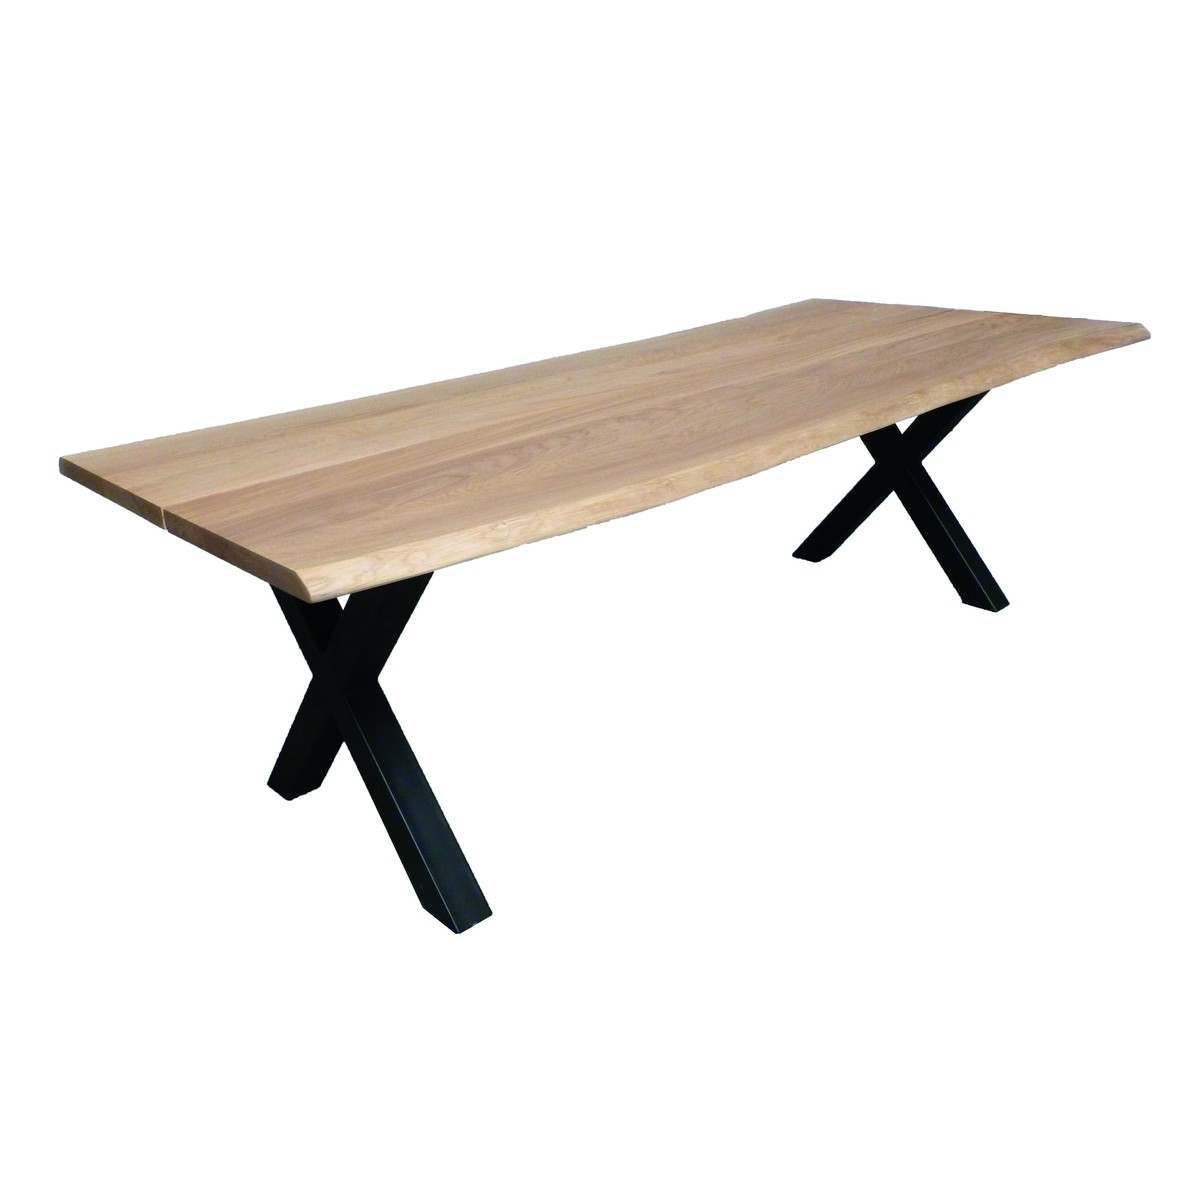   Table de bar Nash Trunk ouverte rectangulaire  160x100x110cm